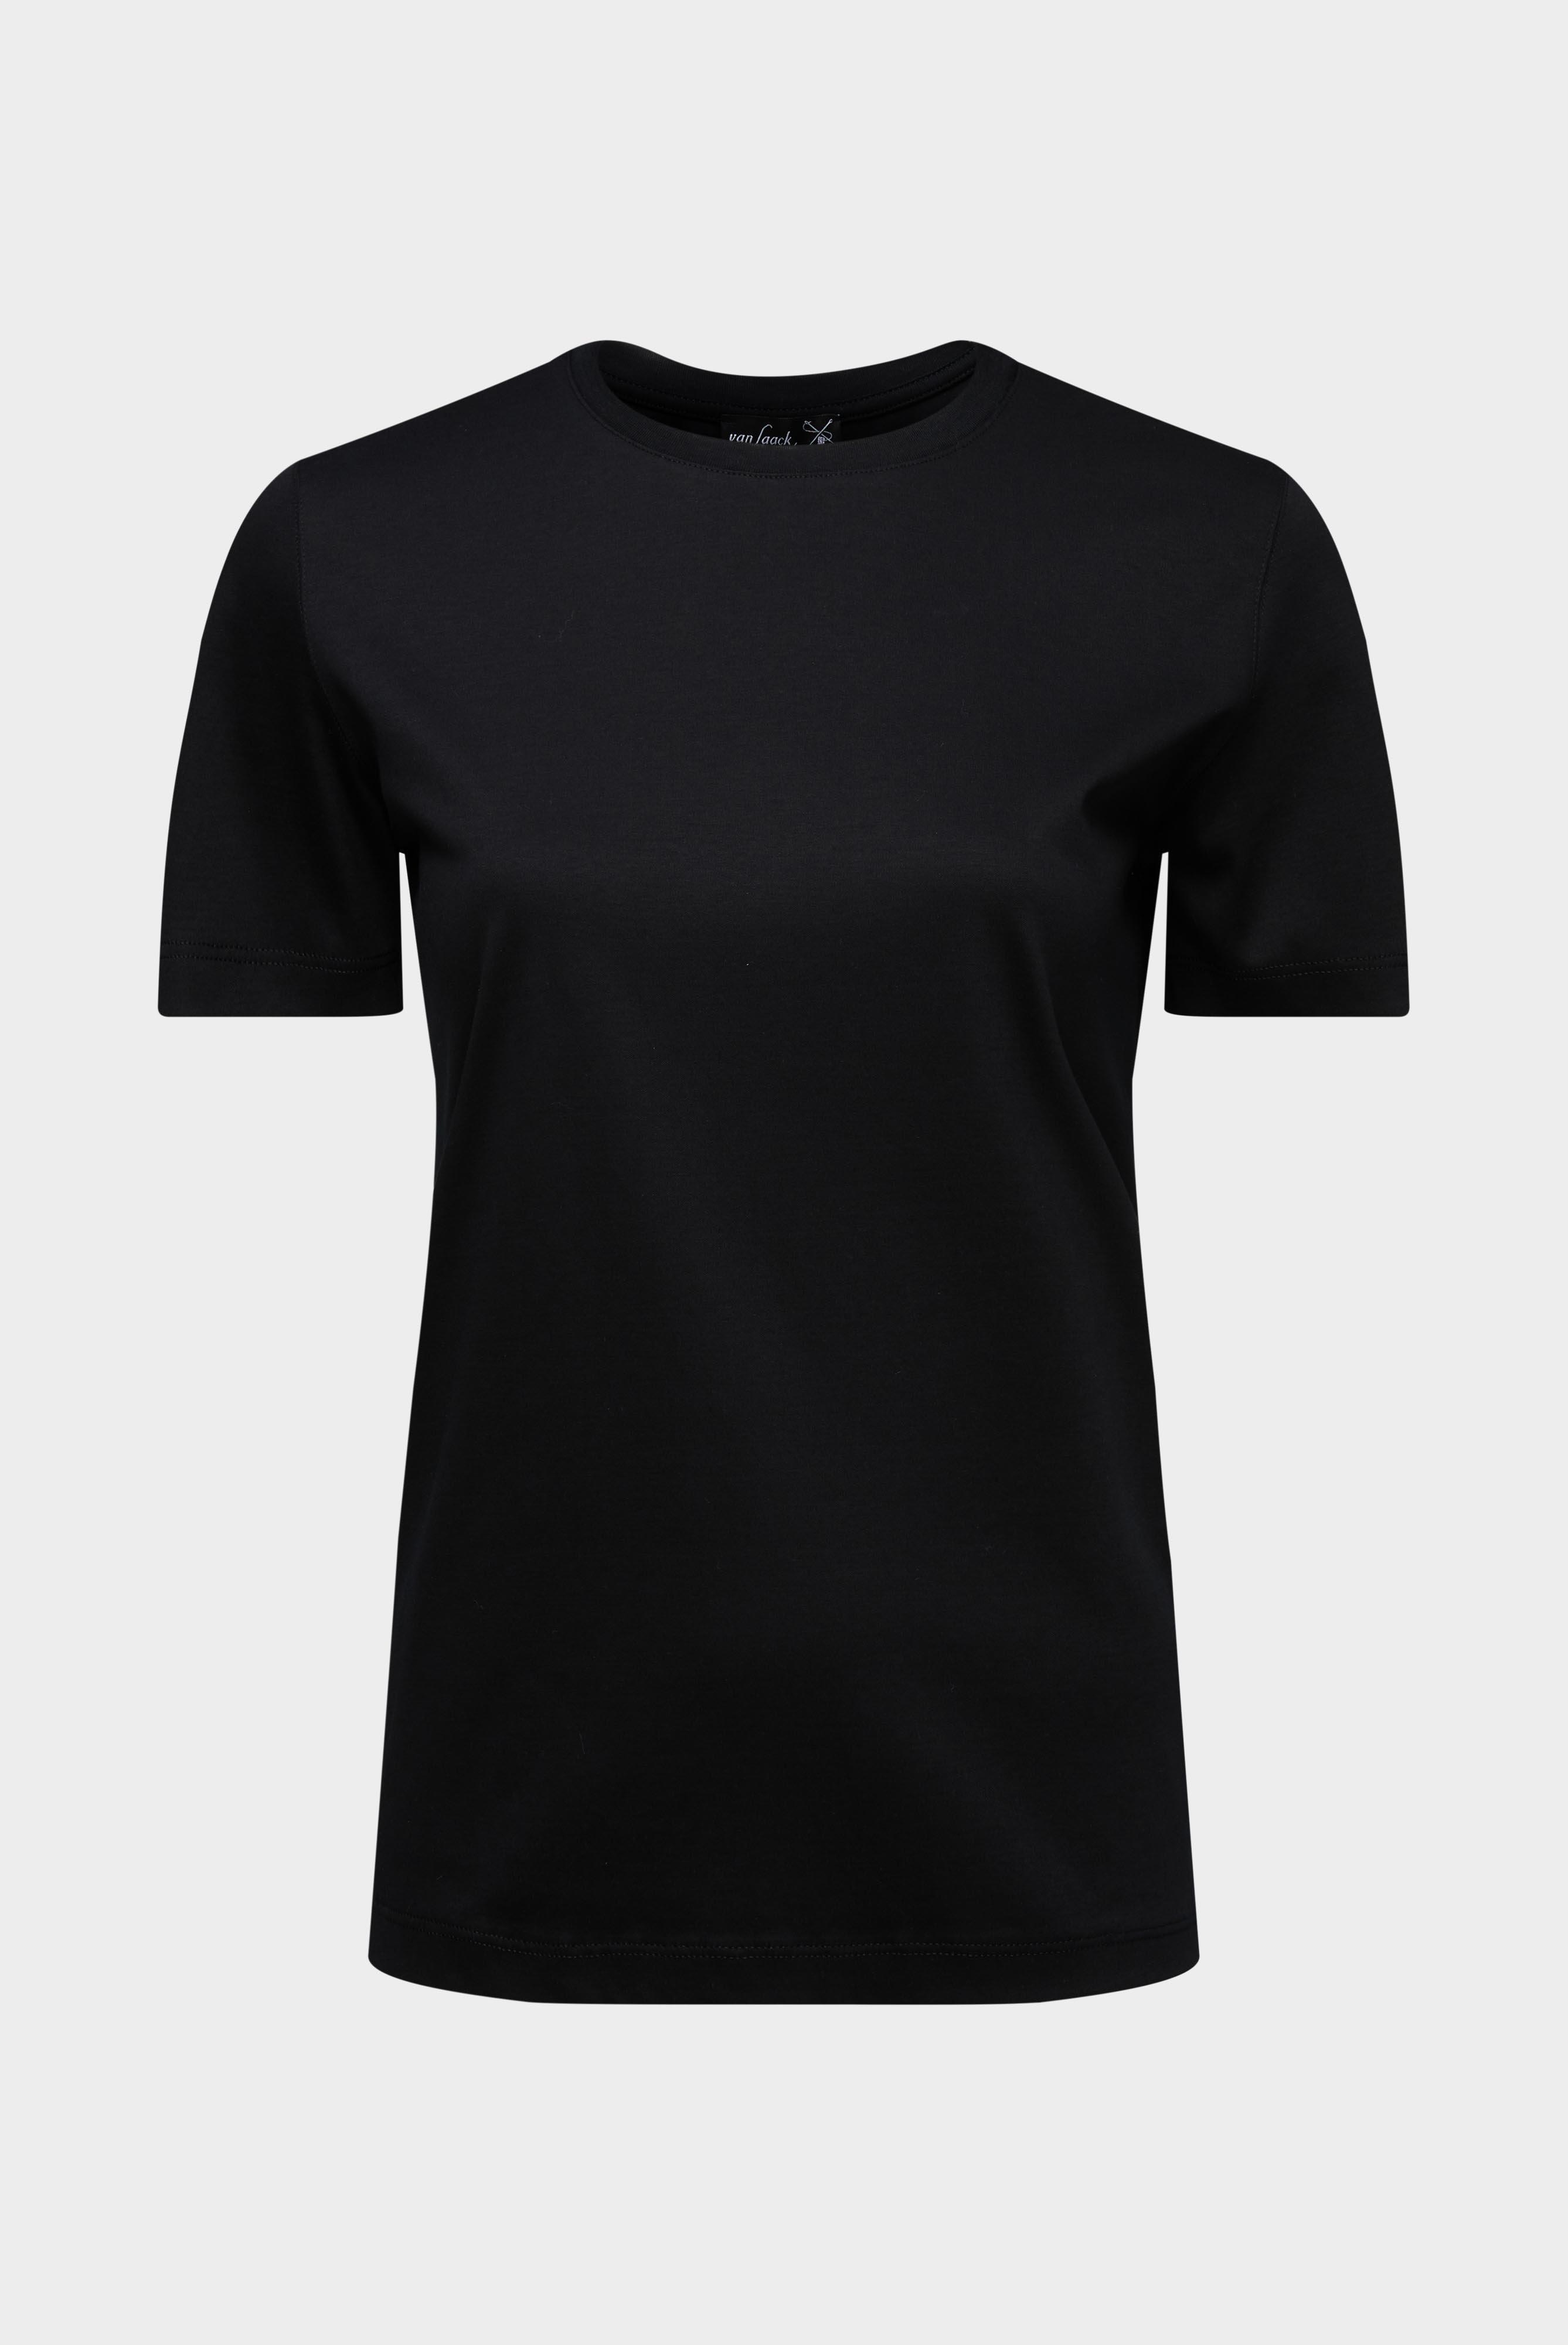 Tops & T-Shirts+Jersey T-Shirt+05.6384.18.180031.099.40